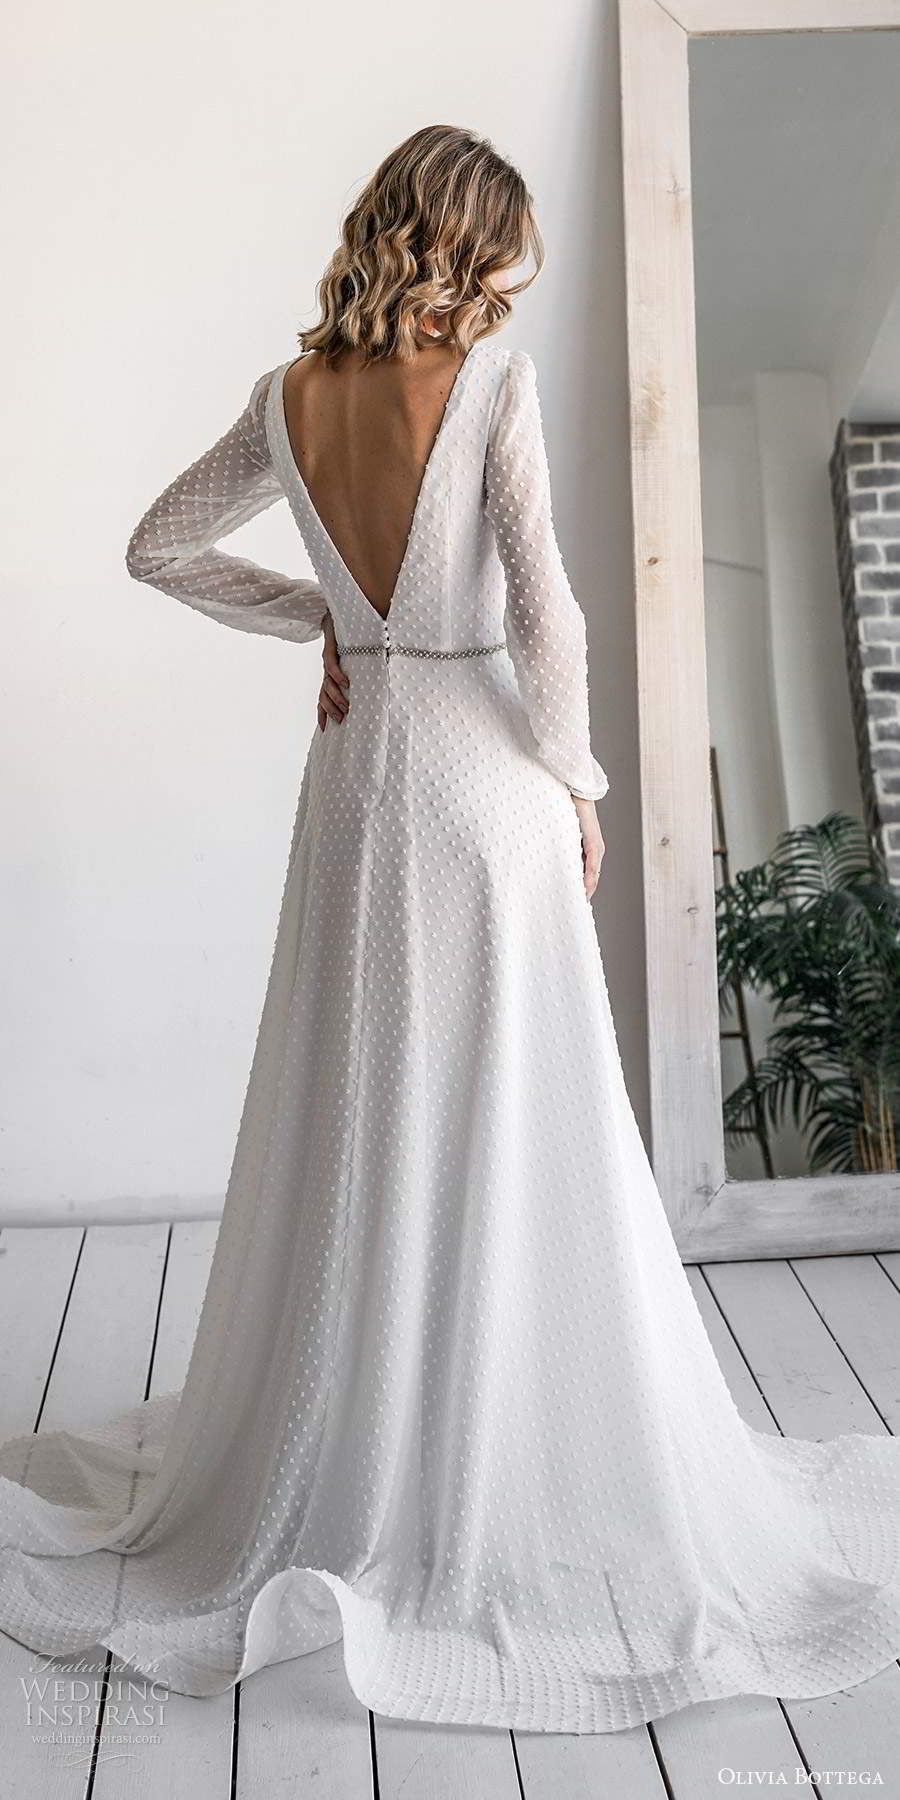 olivia bottega 2021 bridal long sleeves plunging v neckline fully embellished a line ball gown wedding dress v back chapel train (13) bv